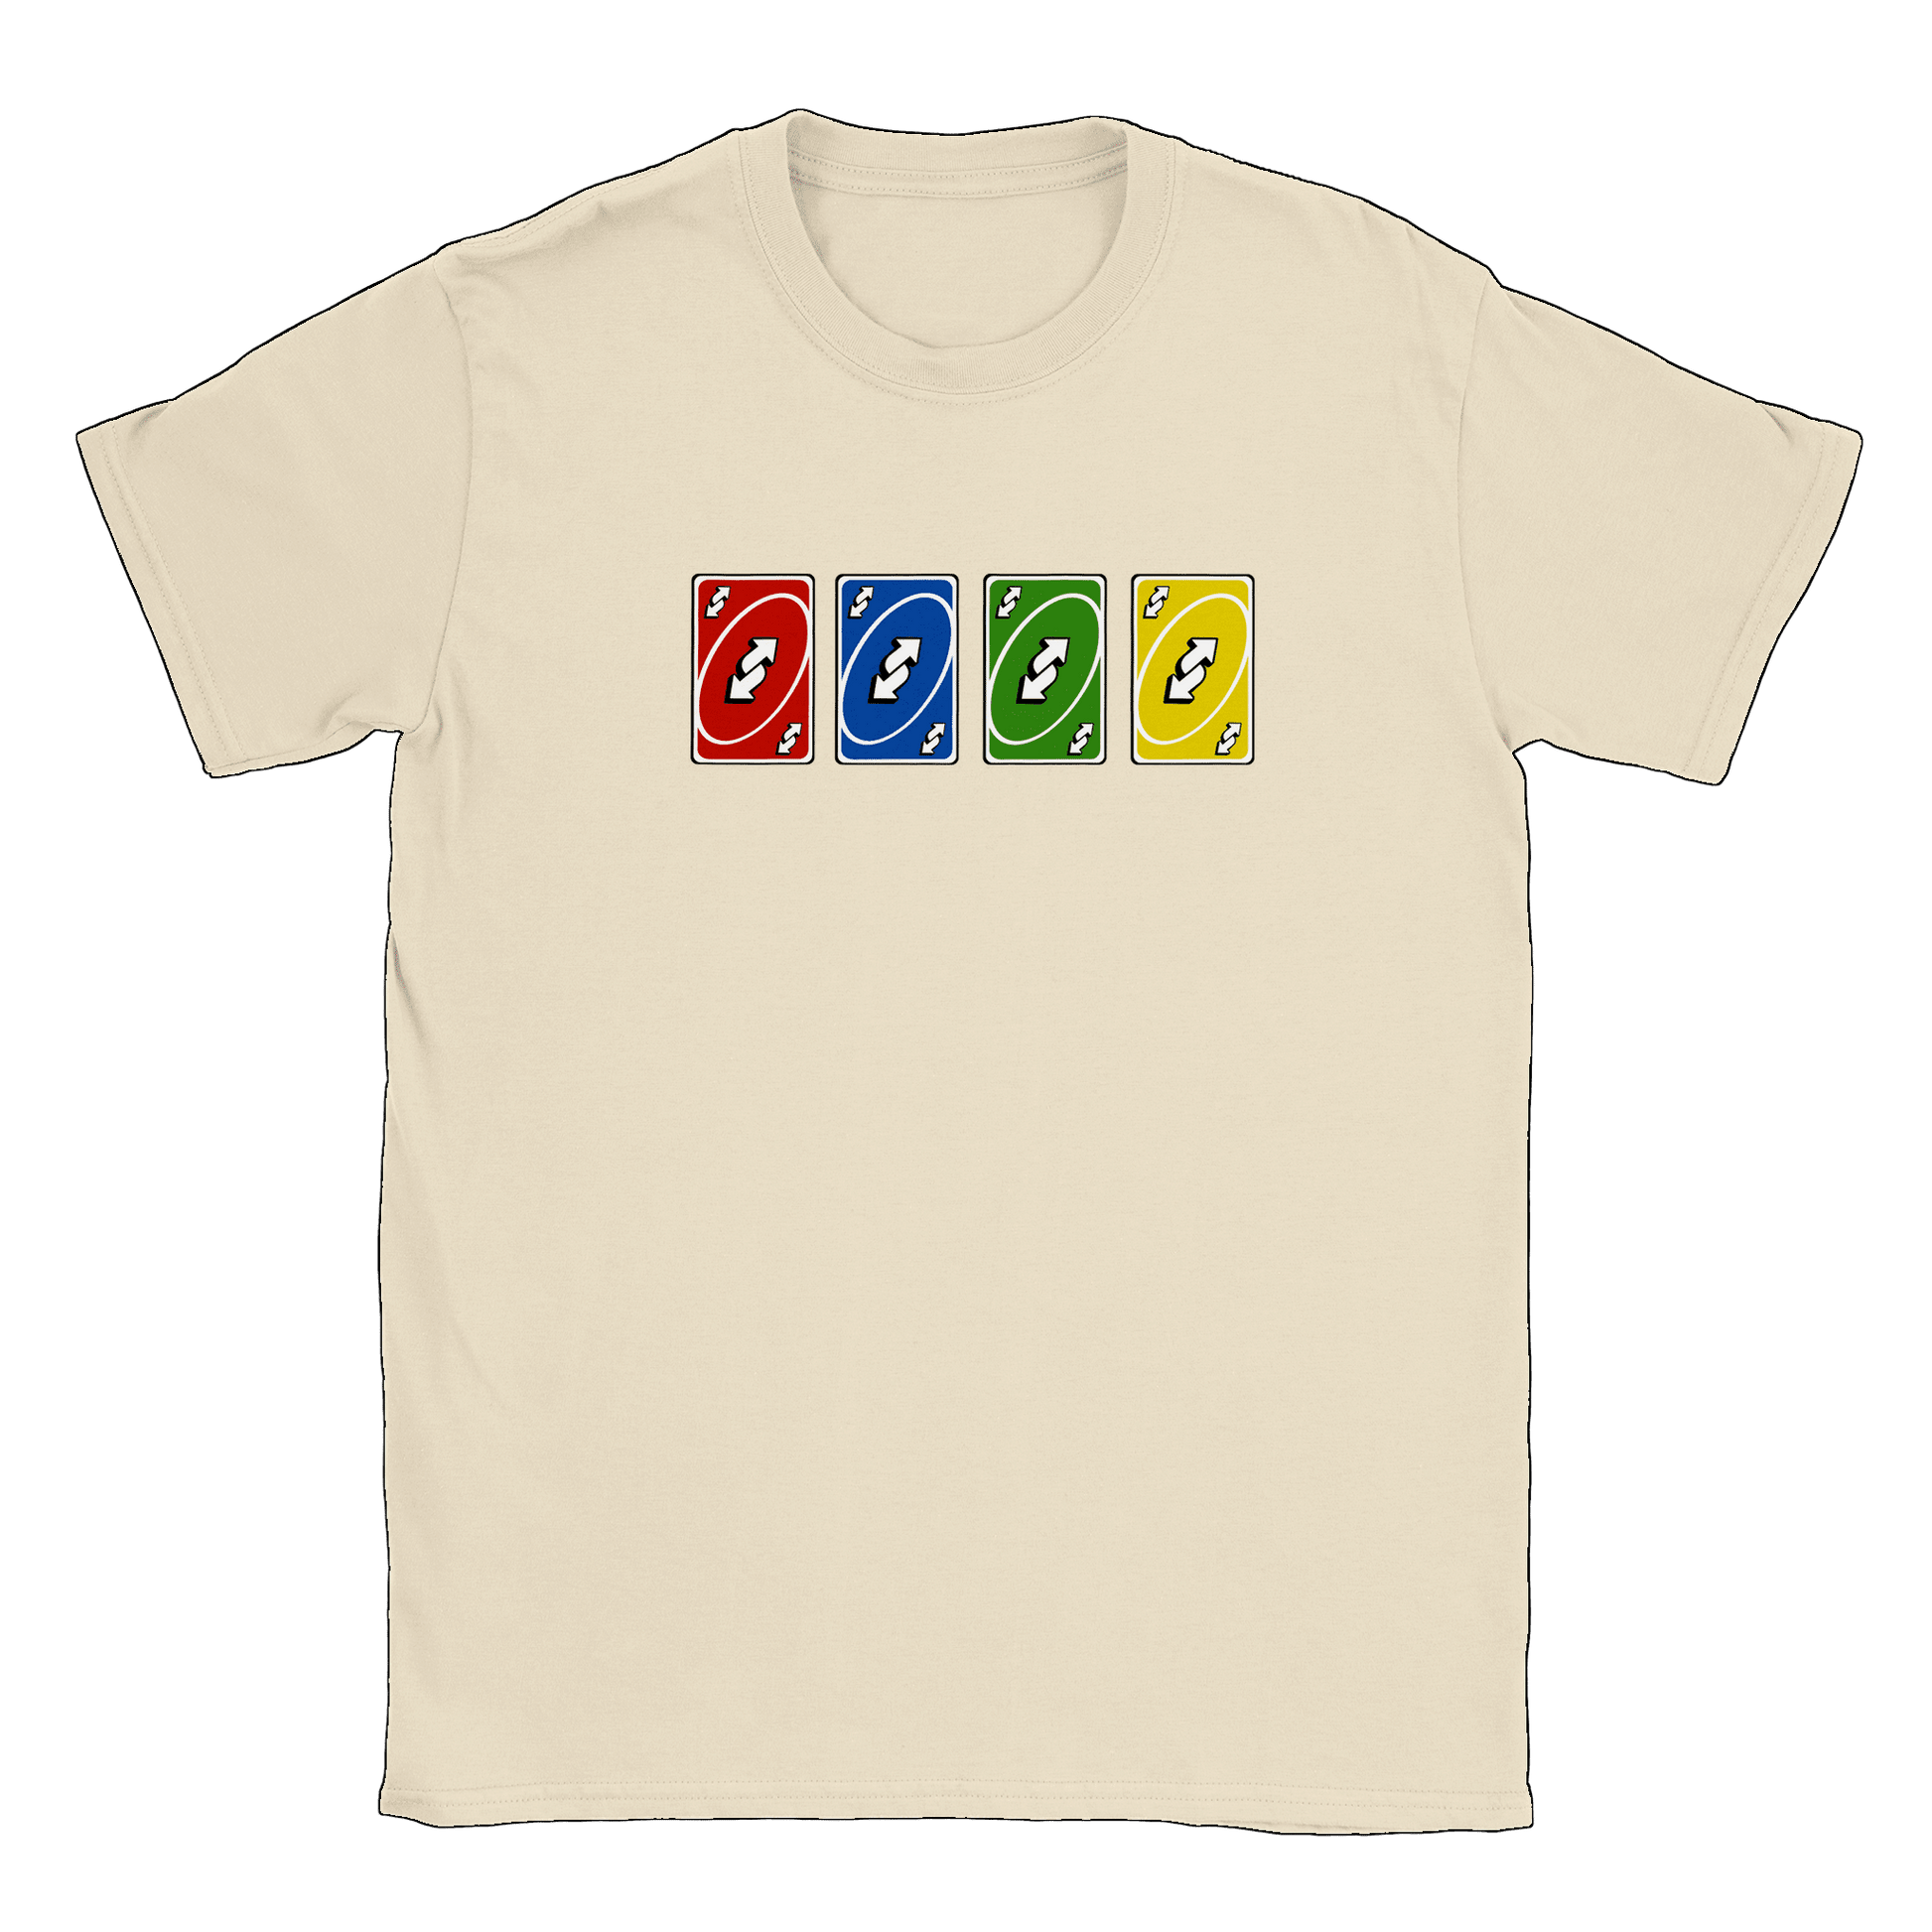 Vändkort alla färger - T-shirt Natural